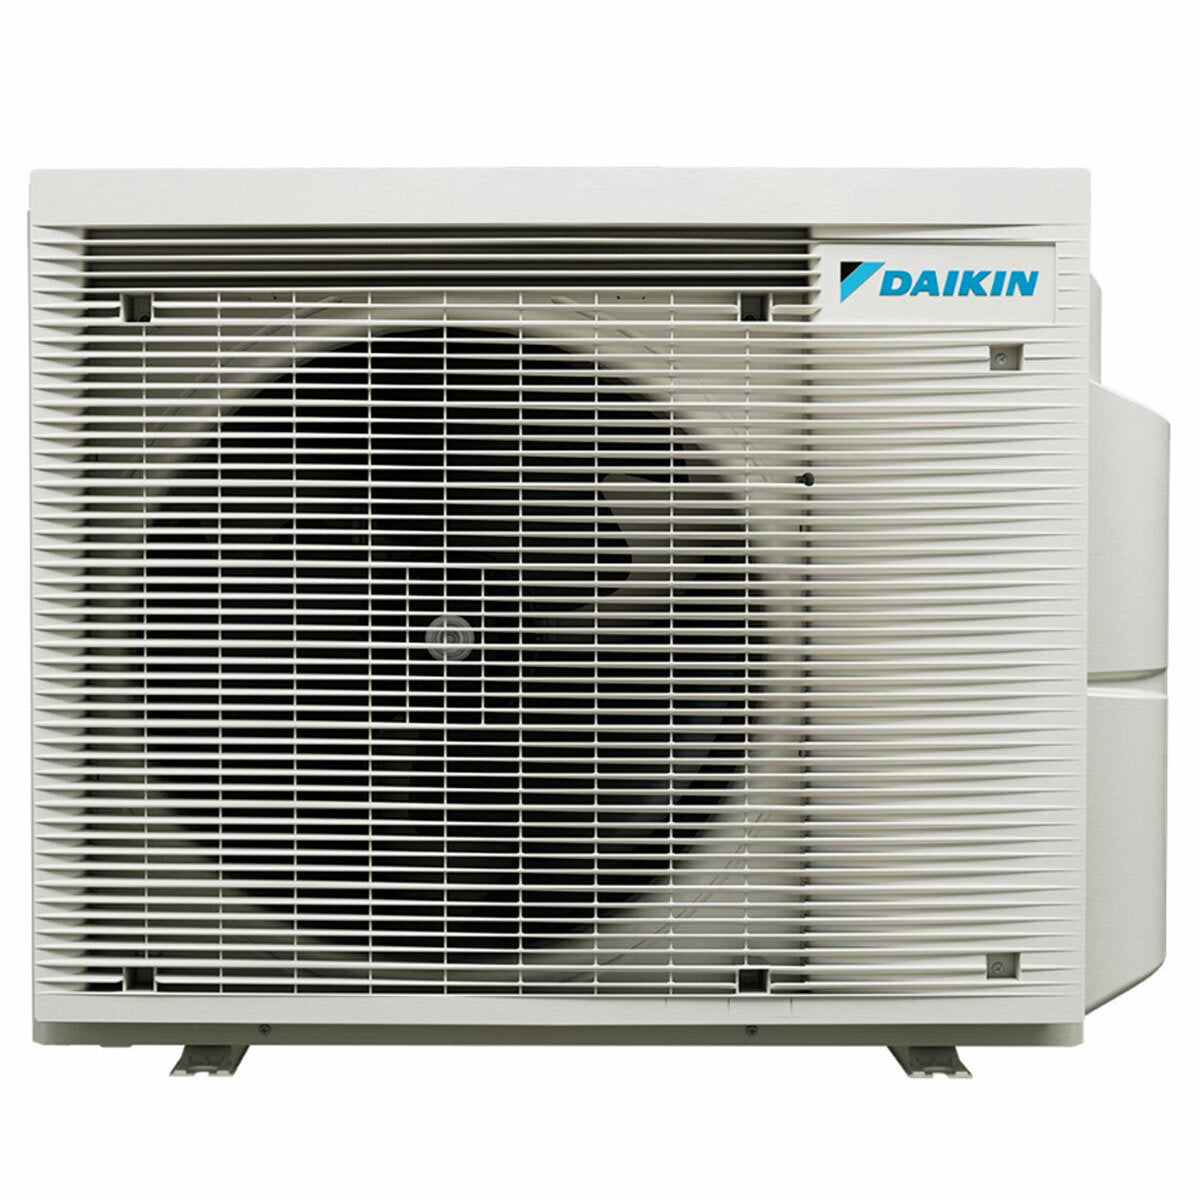 Daikin Emura 3 trial split air conditioner 7000+9000+9000 BTU inverter A++ wifi outdoor unit 4 kW Black